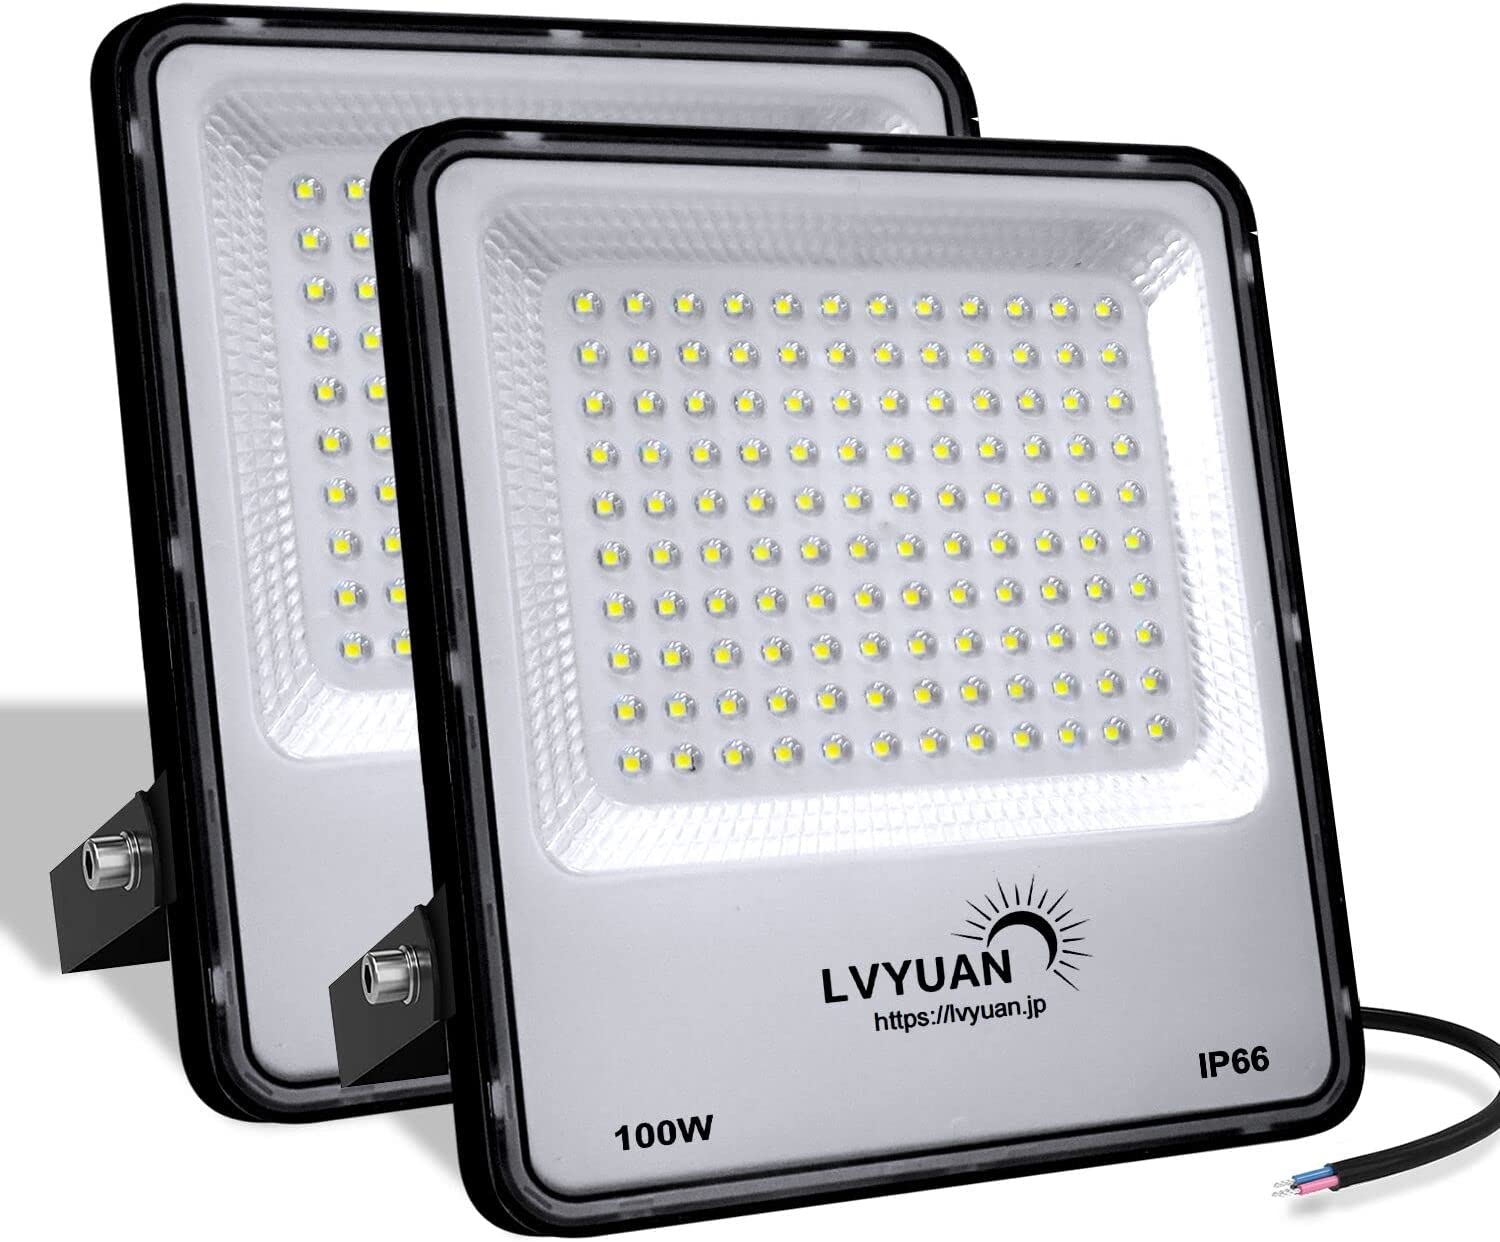 LVYUAN(リョクエン) 100w LED投光器【PC素材 2個入】 - LVYUAN ...